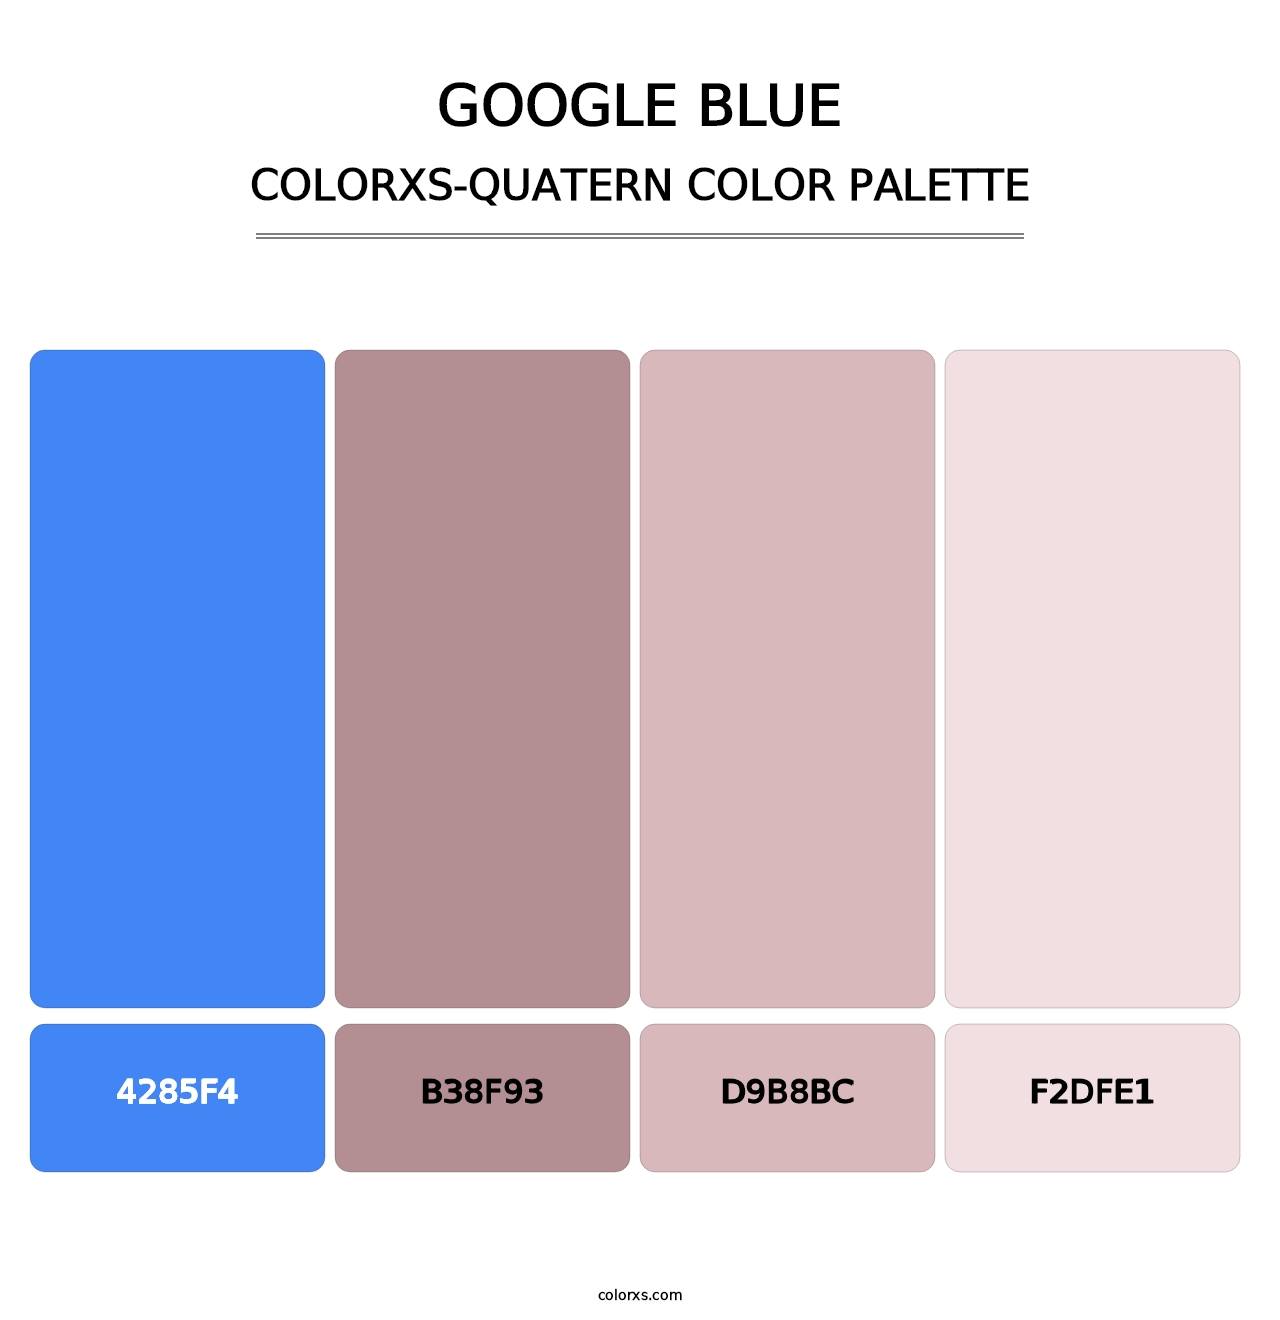 Google Blue - Colorxs Quatern Palette